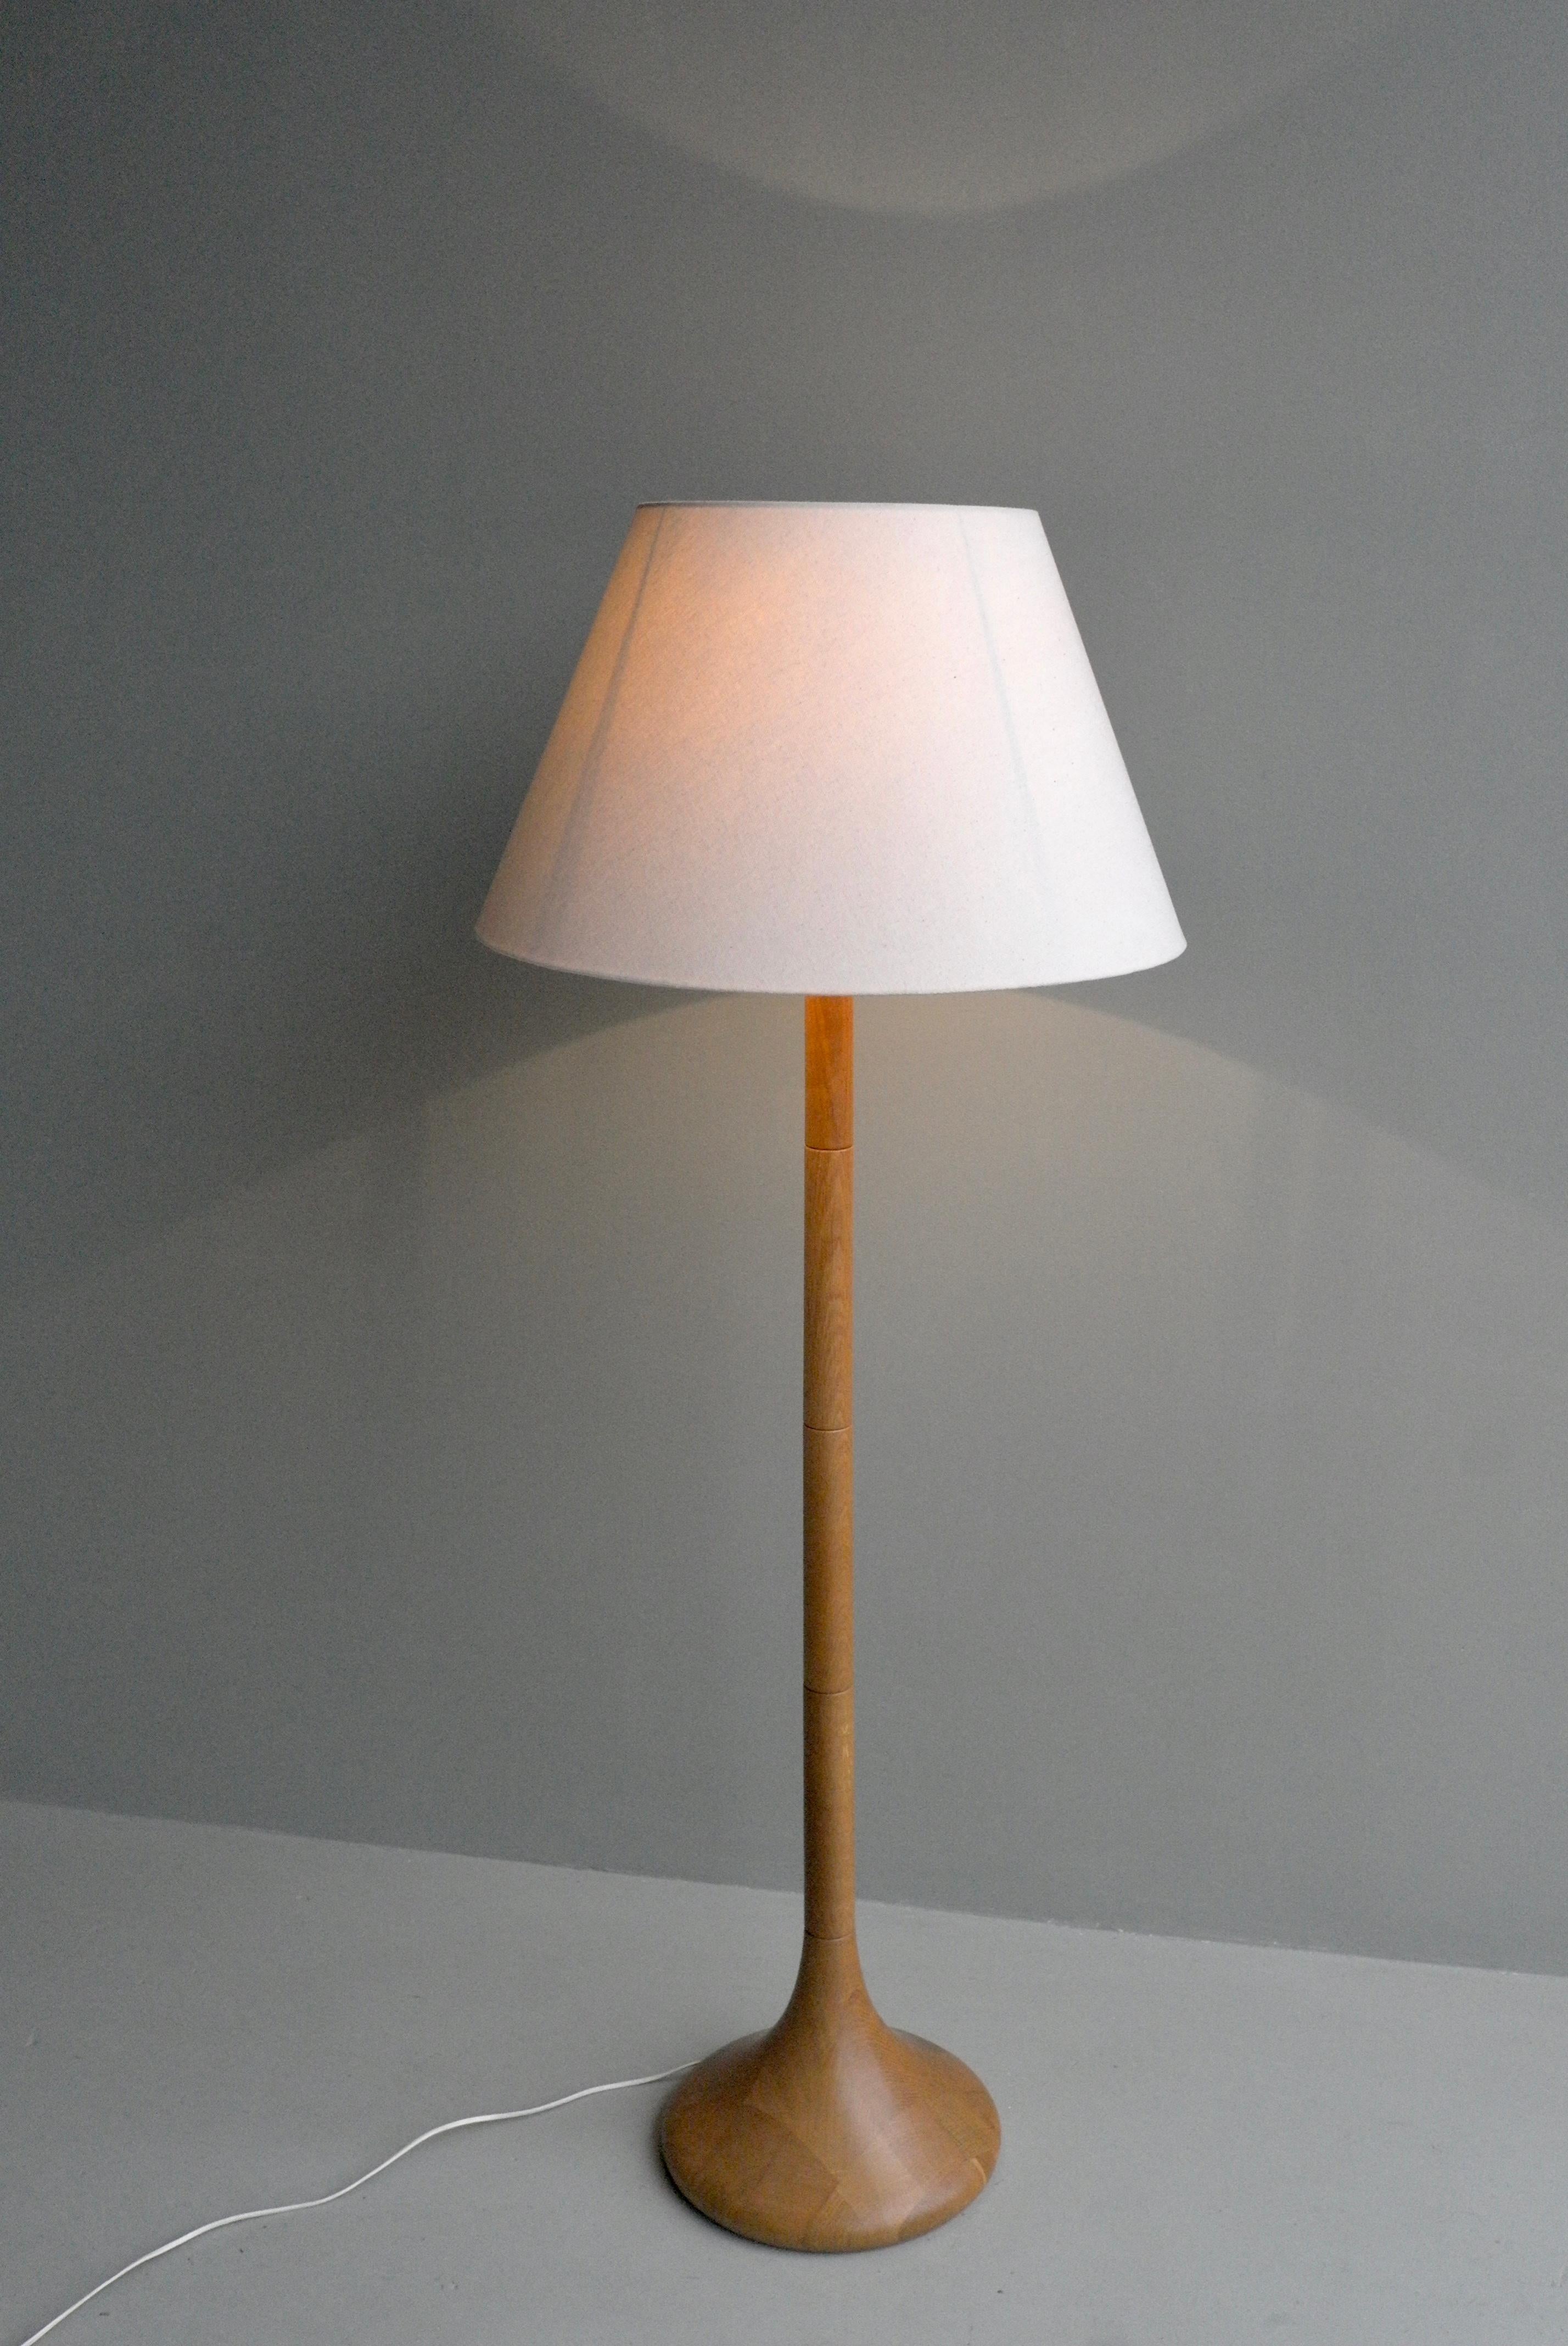 Bent Møller Jørgensen Danish Floor Lamp with Oak Inlaid Pattern by Dyrlund 1970s In Good Condition For Sale In Den Haag, NL